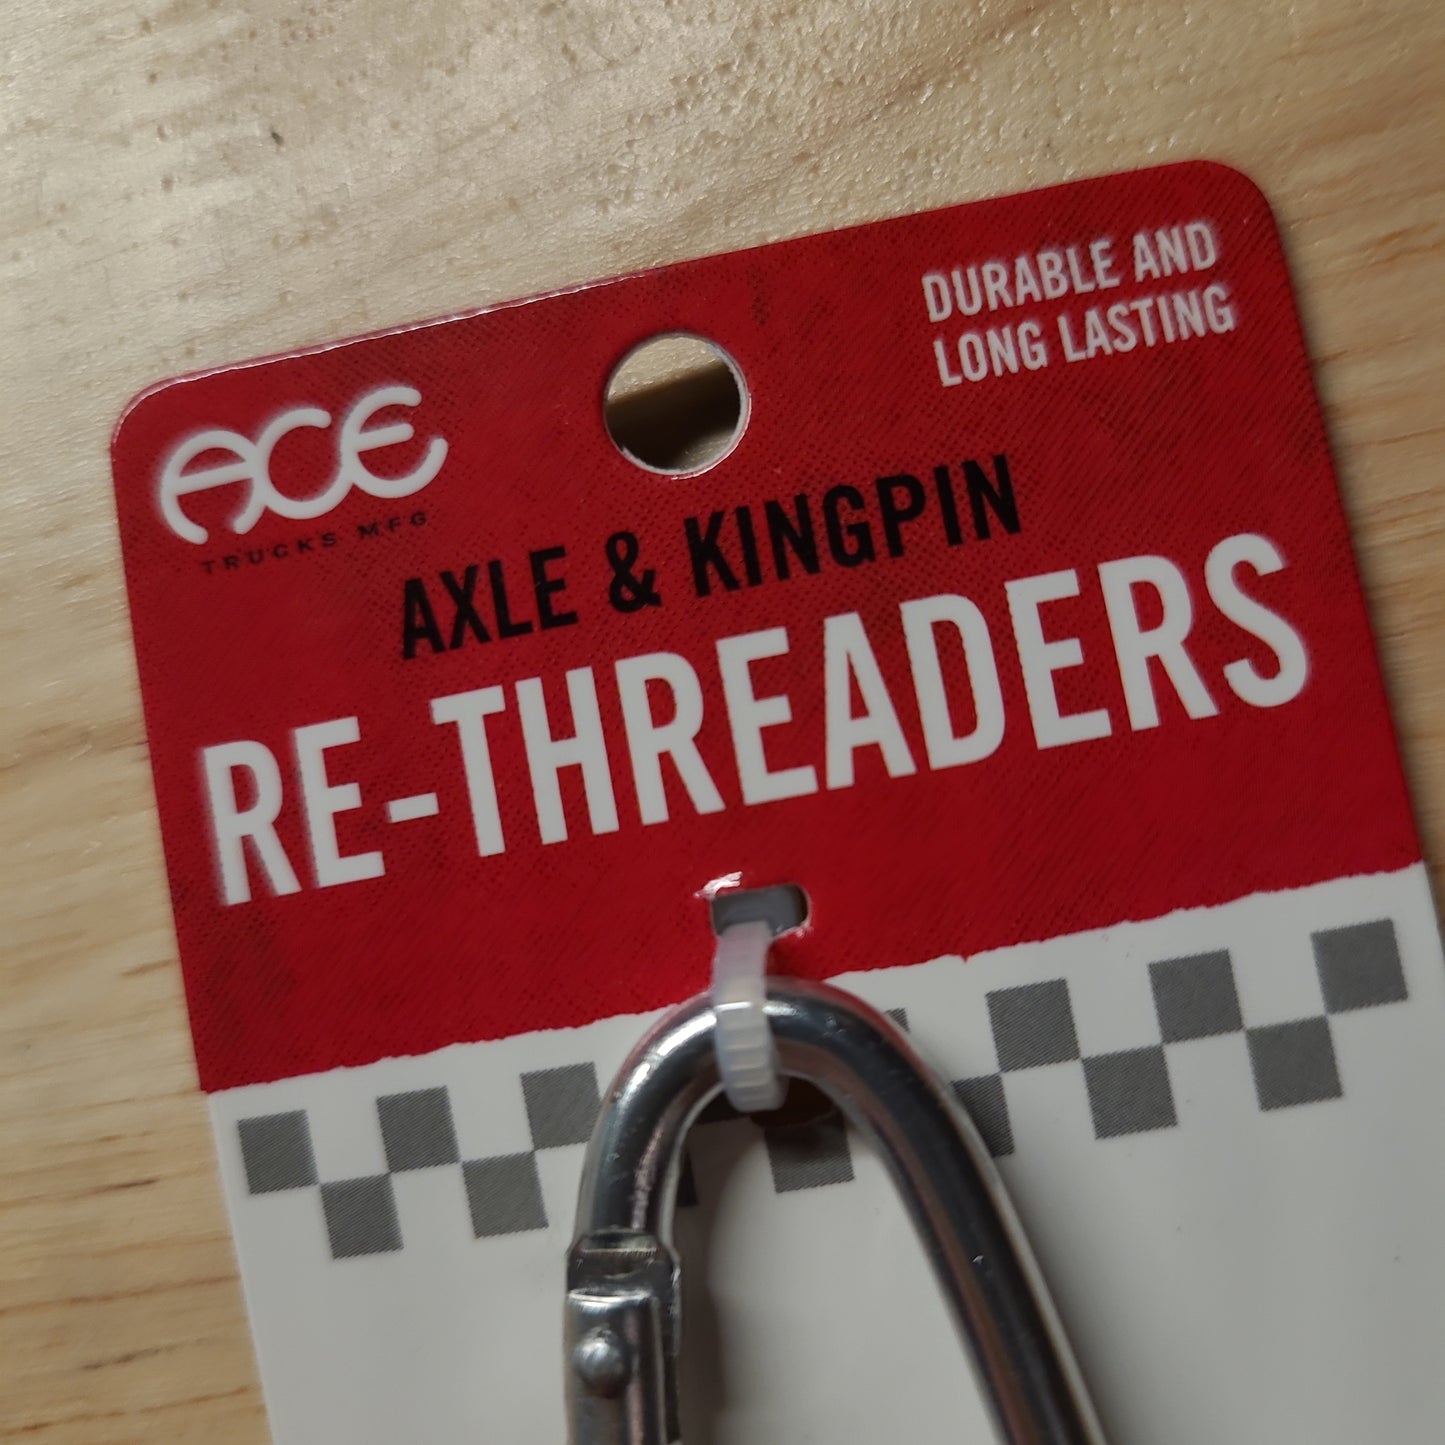 Ace - Axle & Kingpin Re-Threader Kit